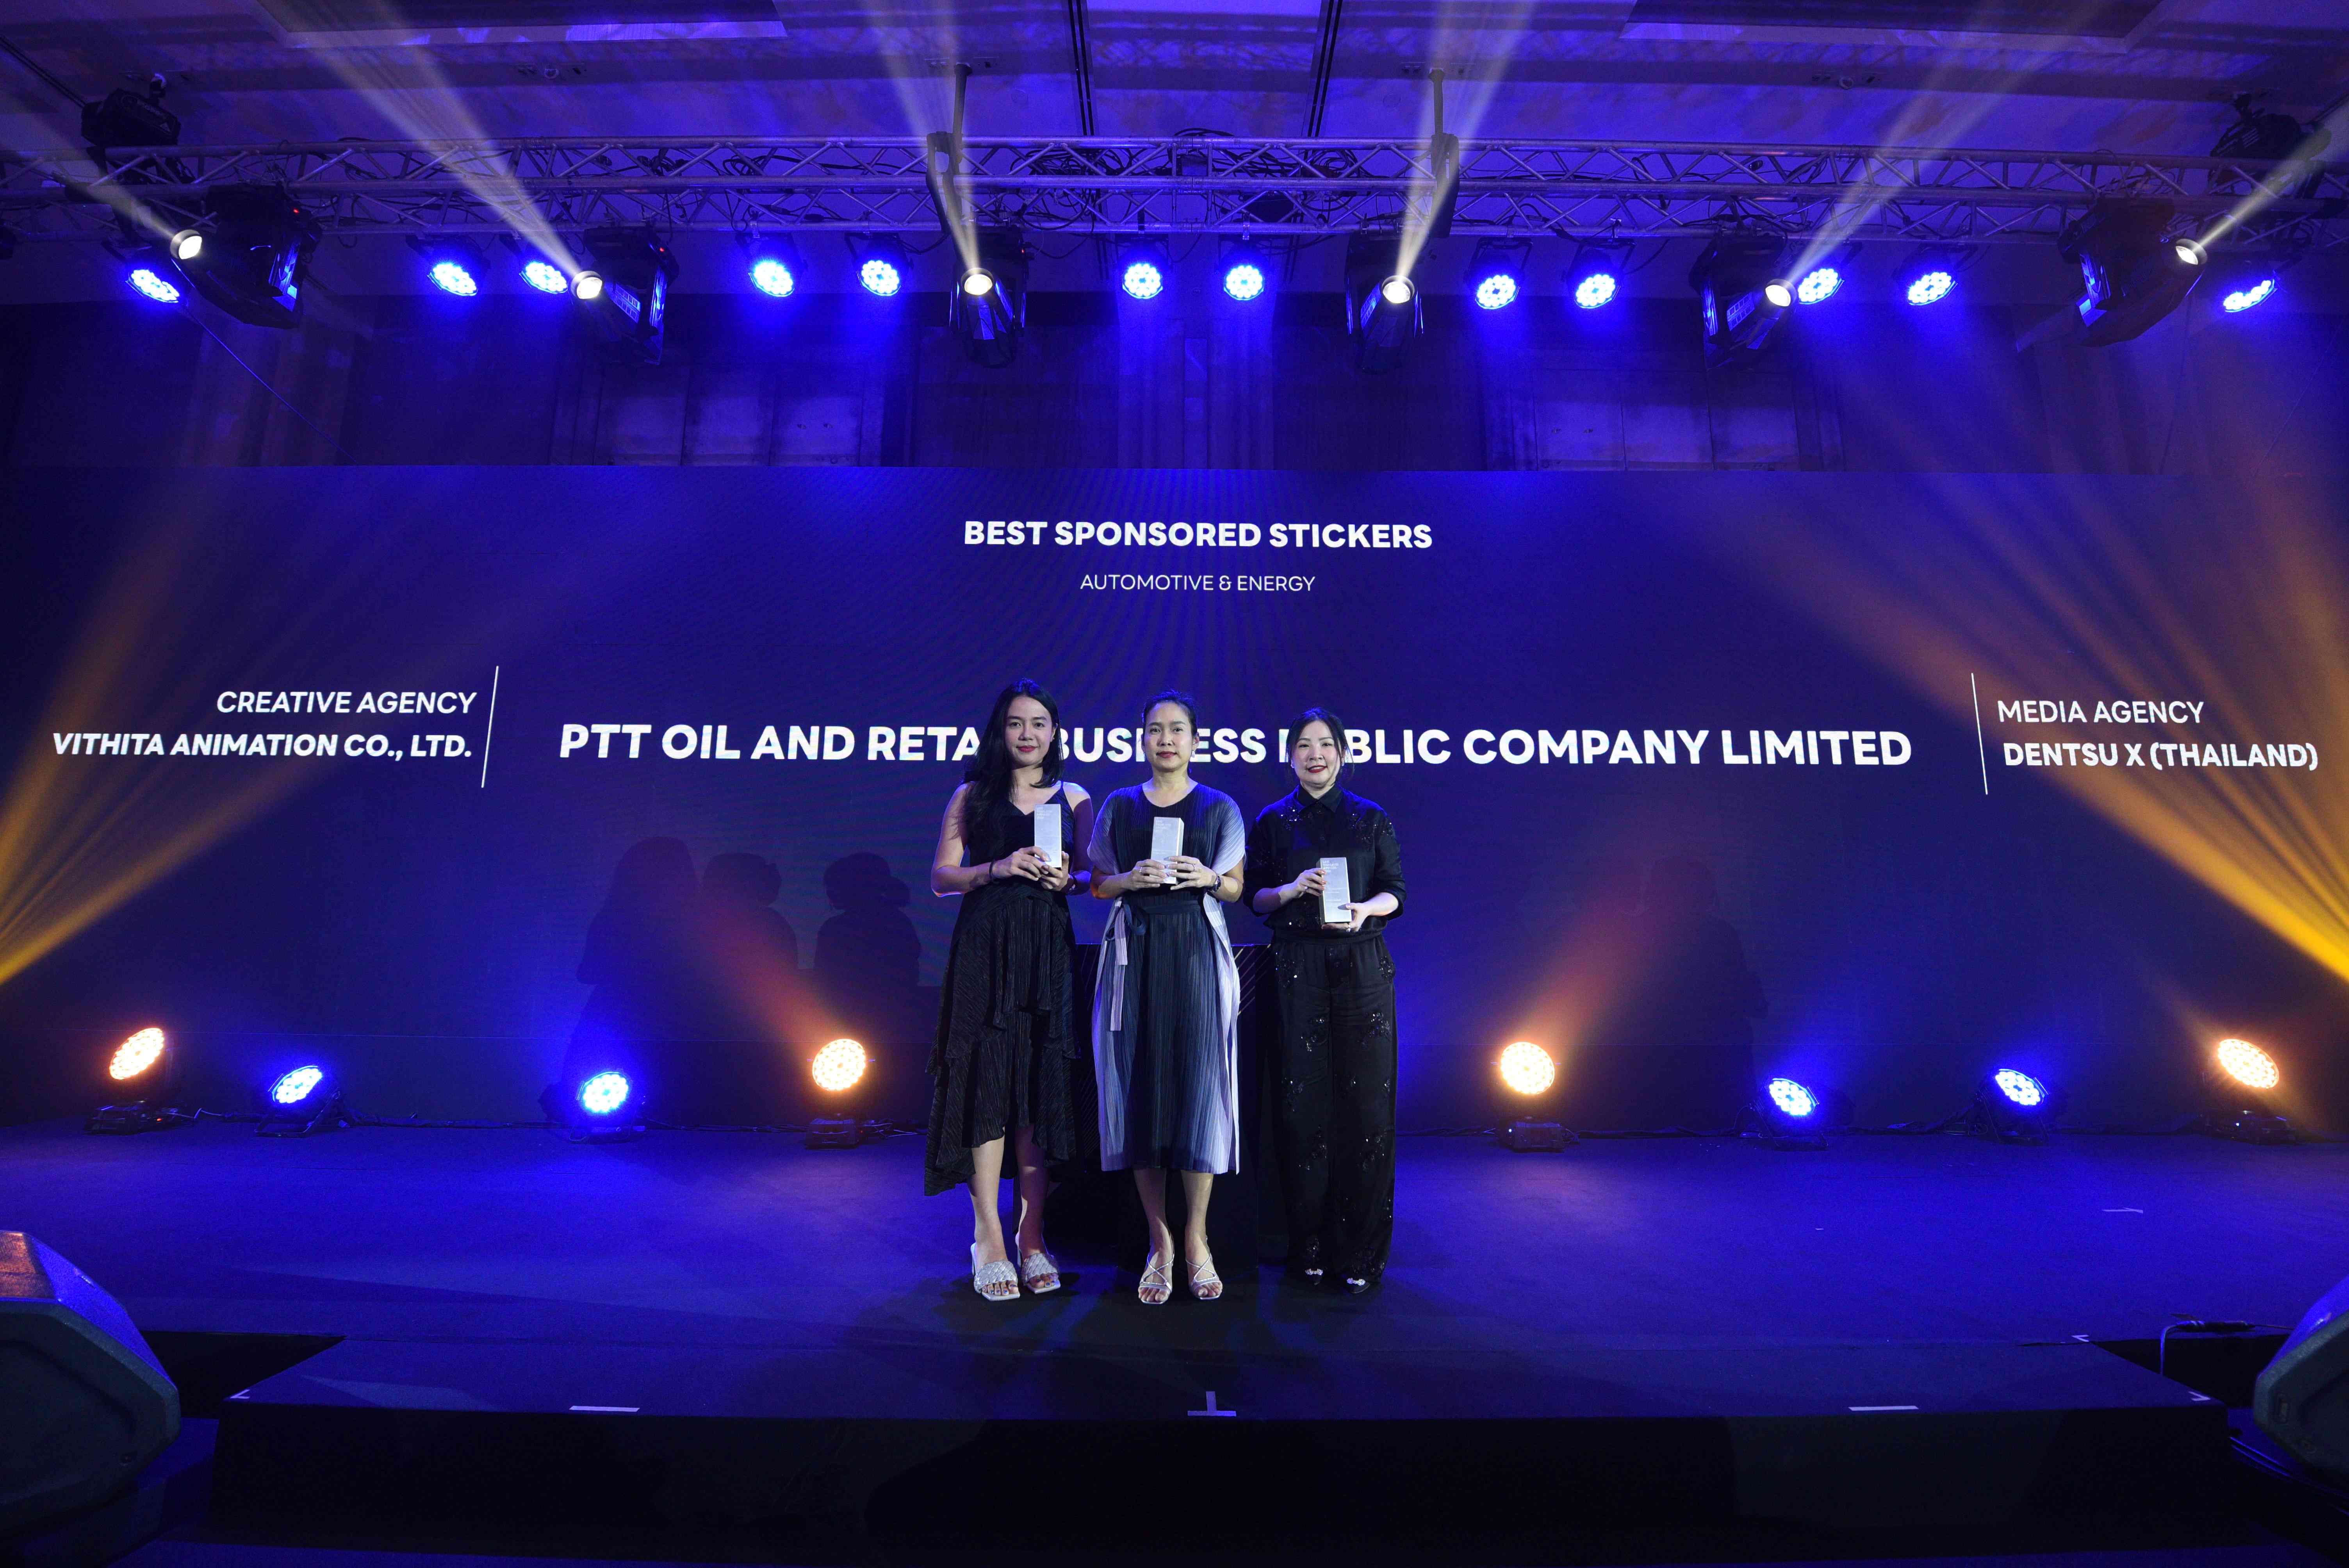 “OR” – “ก๊าซหุงต้ม ปตท.” – “คาเฟ่ อเมซอน” คว้า 3 รางวัล จาก LINE Thailand Awards 2022 สุดยอดแบรนด์ที่สร้างผลงานการตลาดยอดเยี่ยมบนแพลตฟอร์ม LINE 